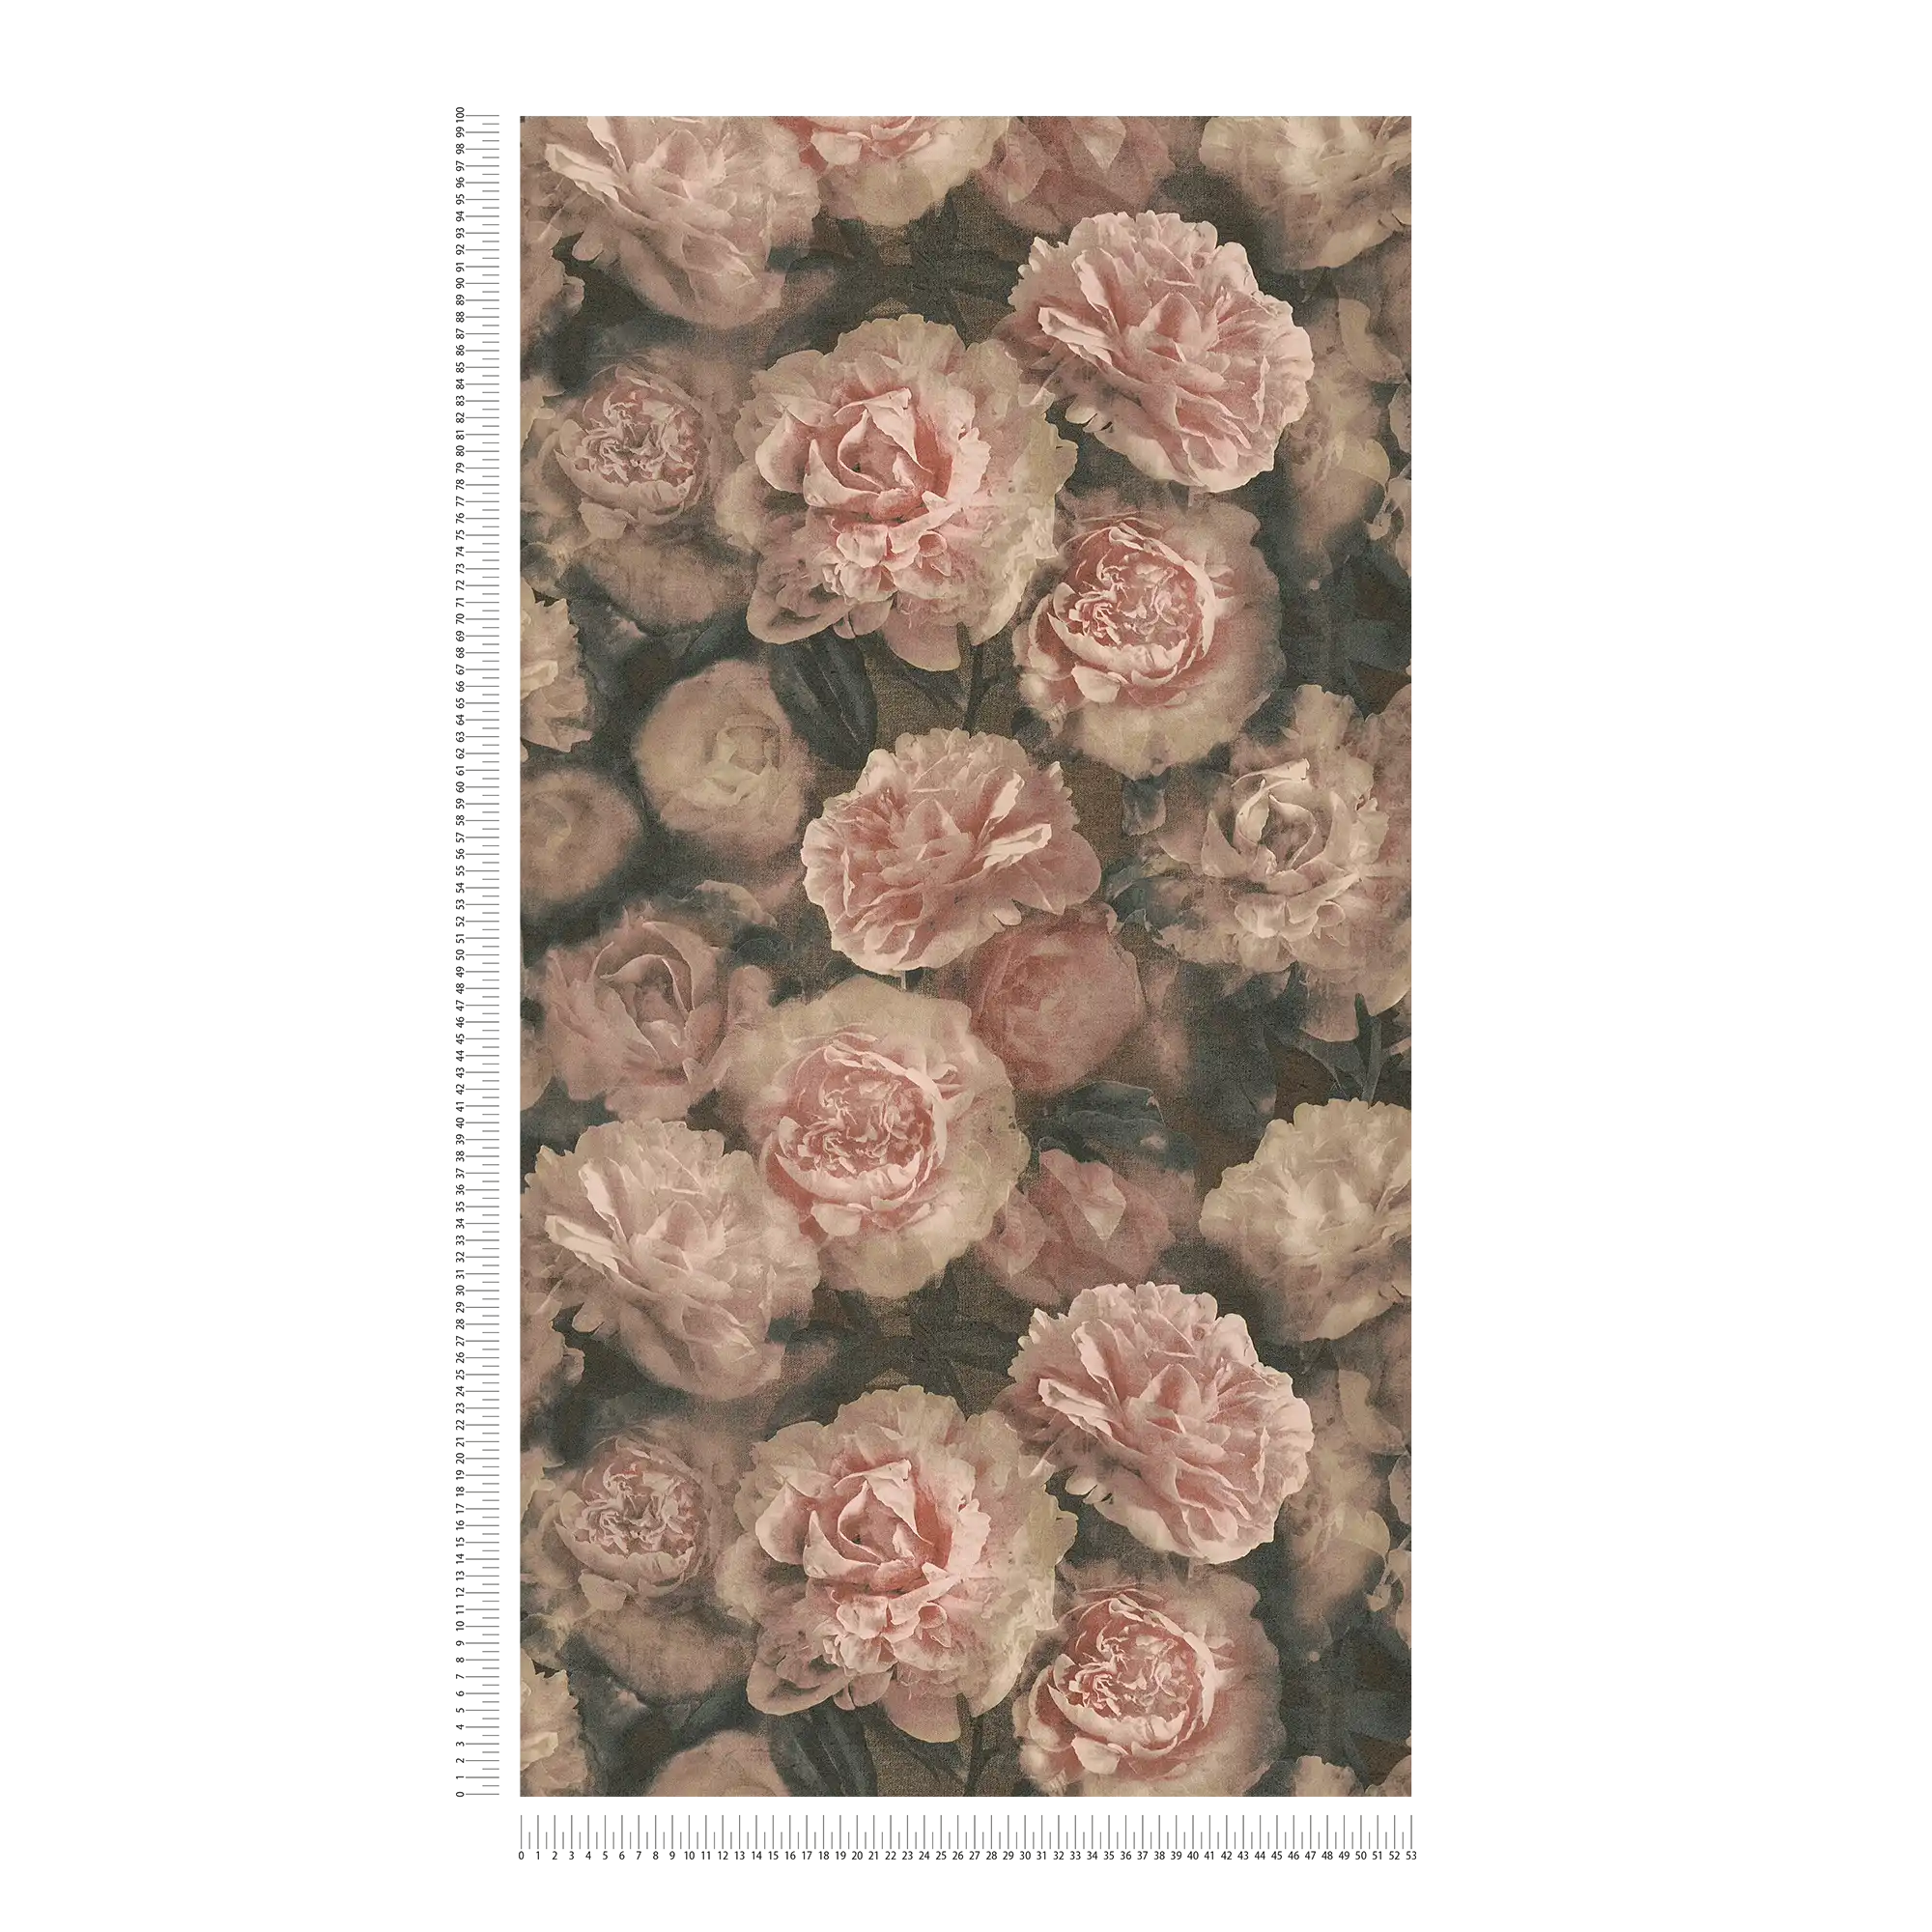             Papel pintado floral de aspecto vintage rosas - rosa, rojo, negro
        